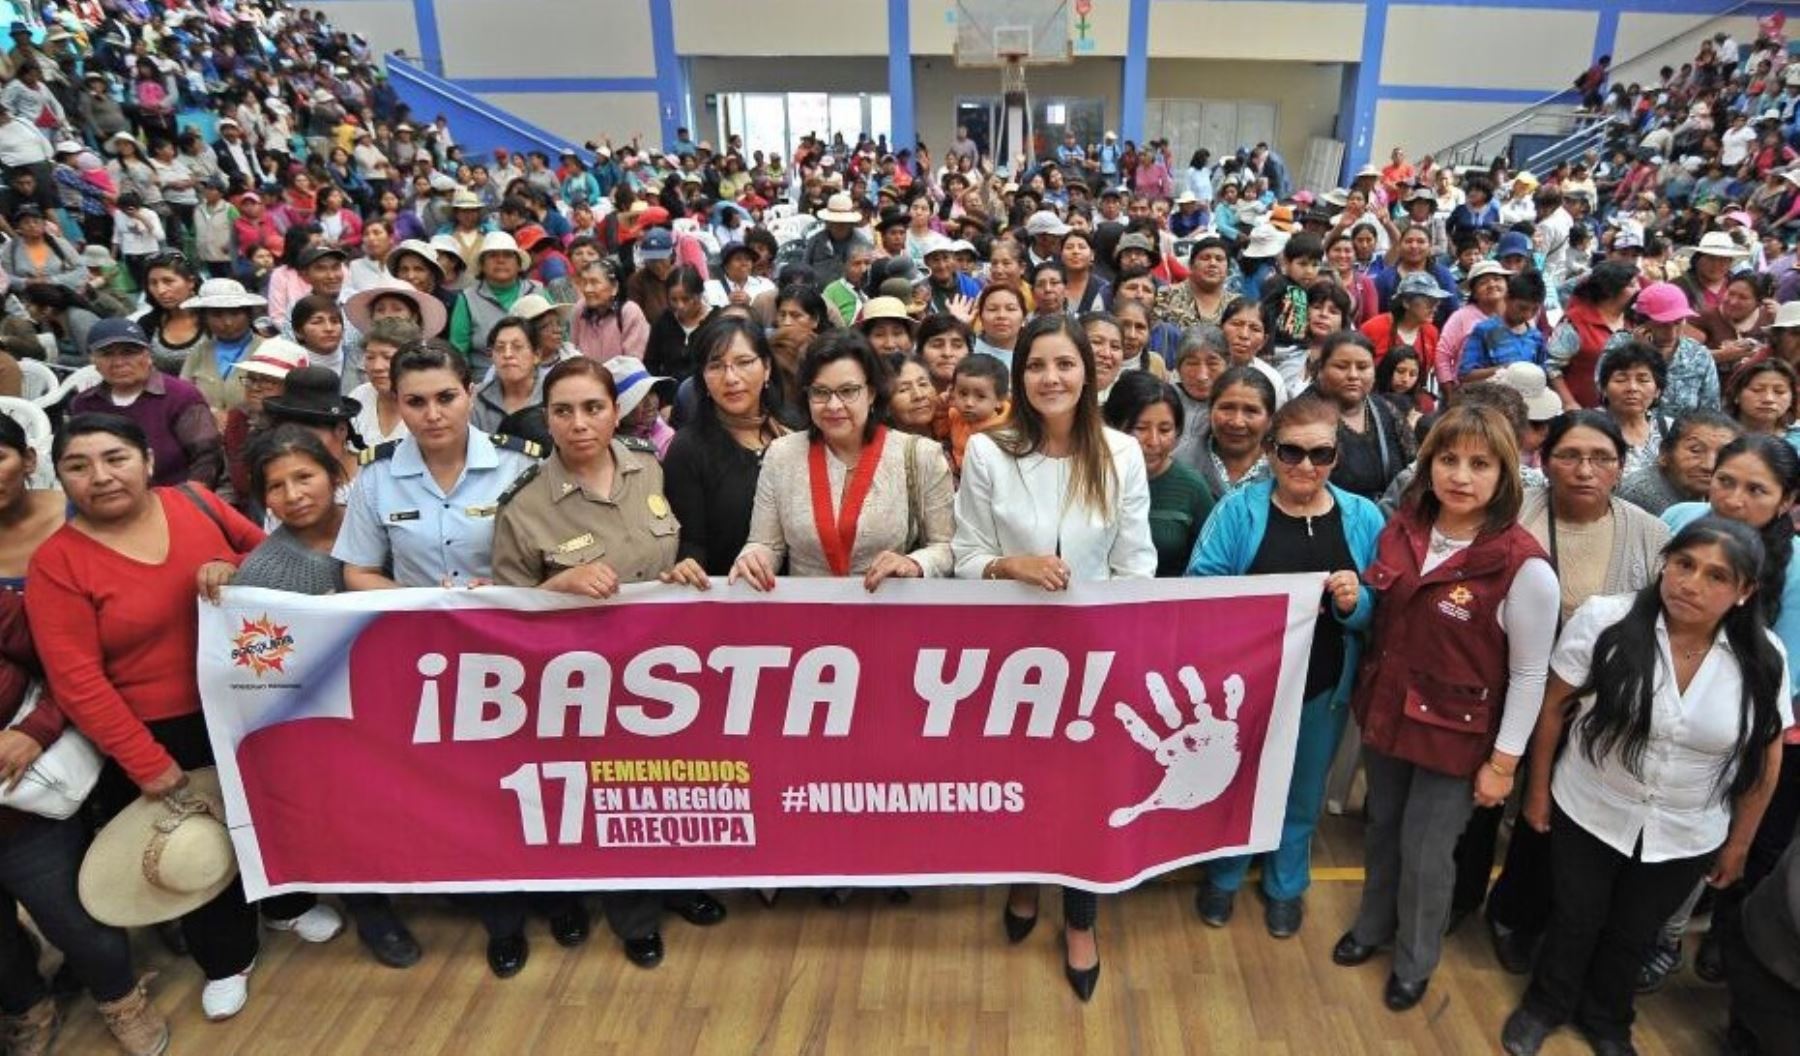 Gobernadora regional de Arequipa, Yamila Osorio, participó en la movilización "Ni una menos" en Arequipa.